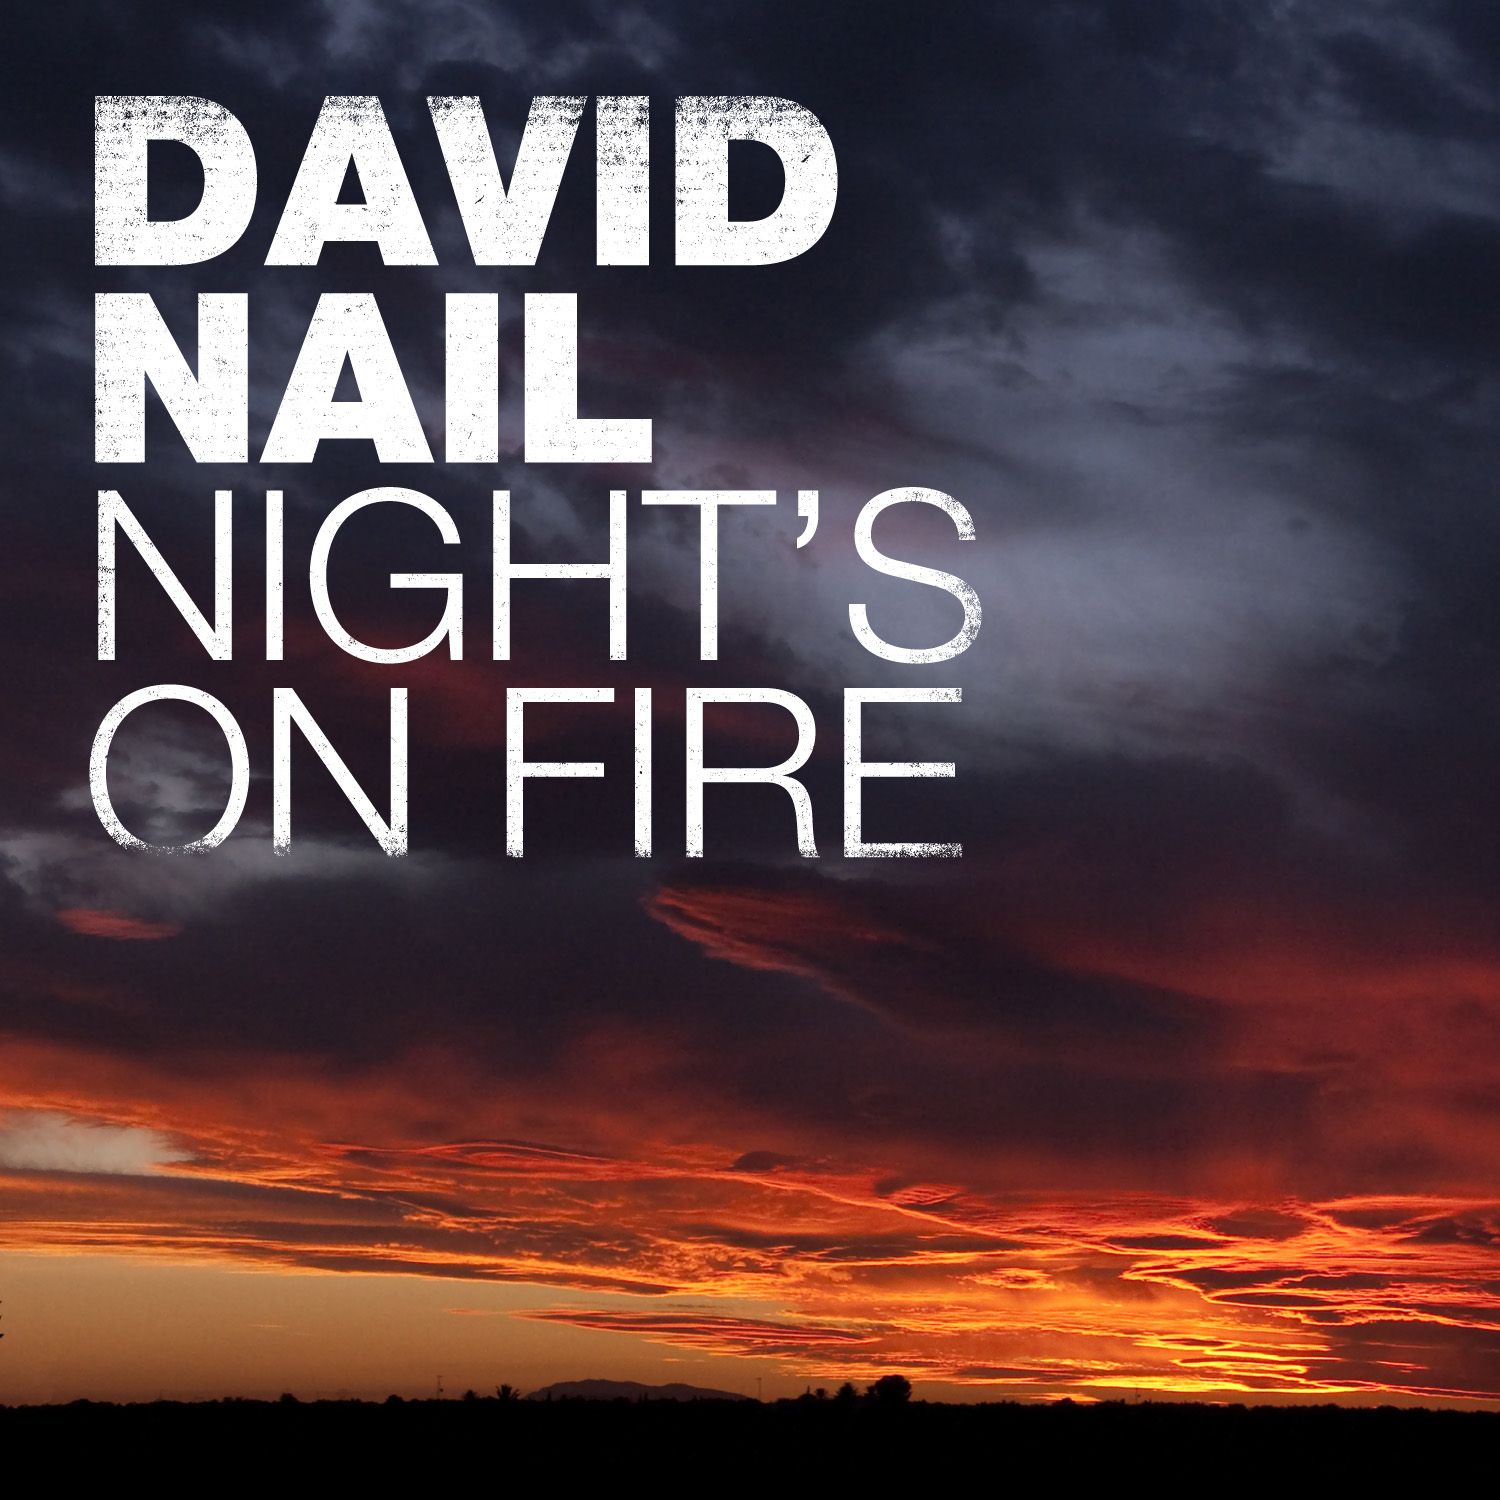 NEW MUSIC FROM DAVID NAIL